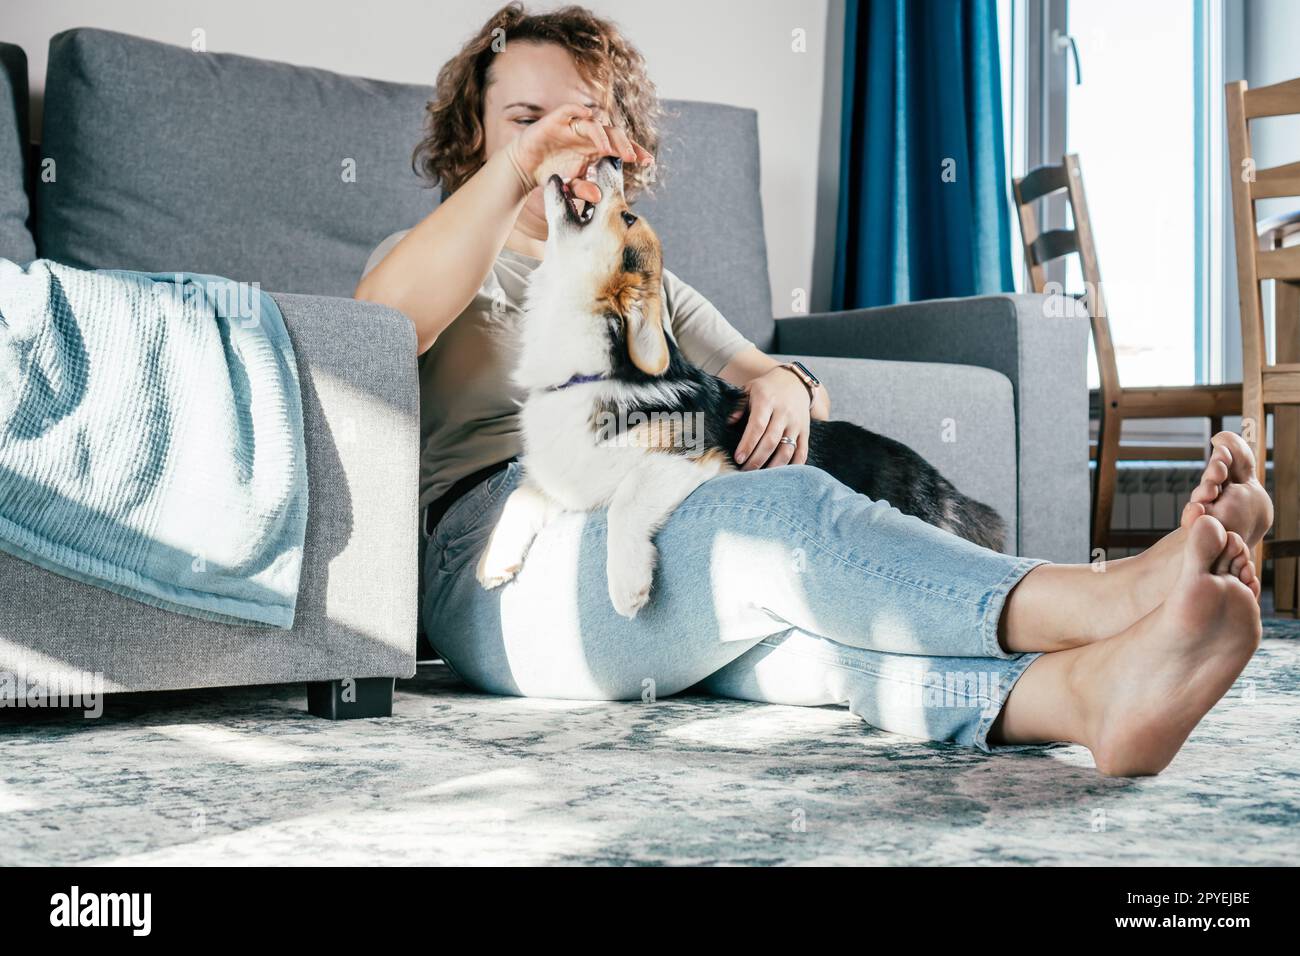 Lockige, fröhliche barfuß Frau mit Hund Corgi. Gehorsamstraining, Tierfütterung, Sitzen und Spielen Stockfoto